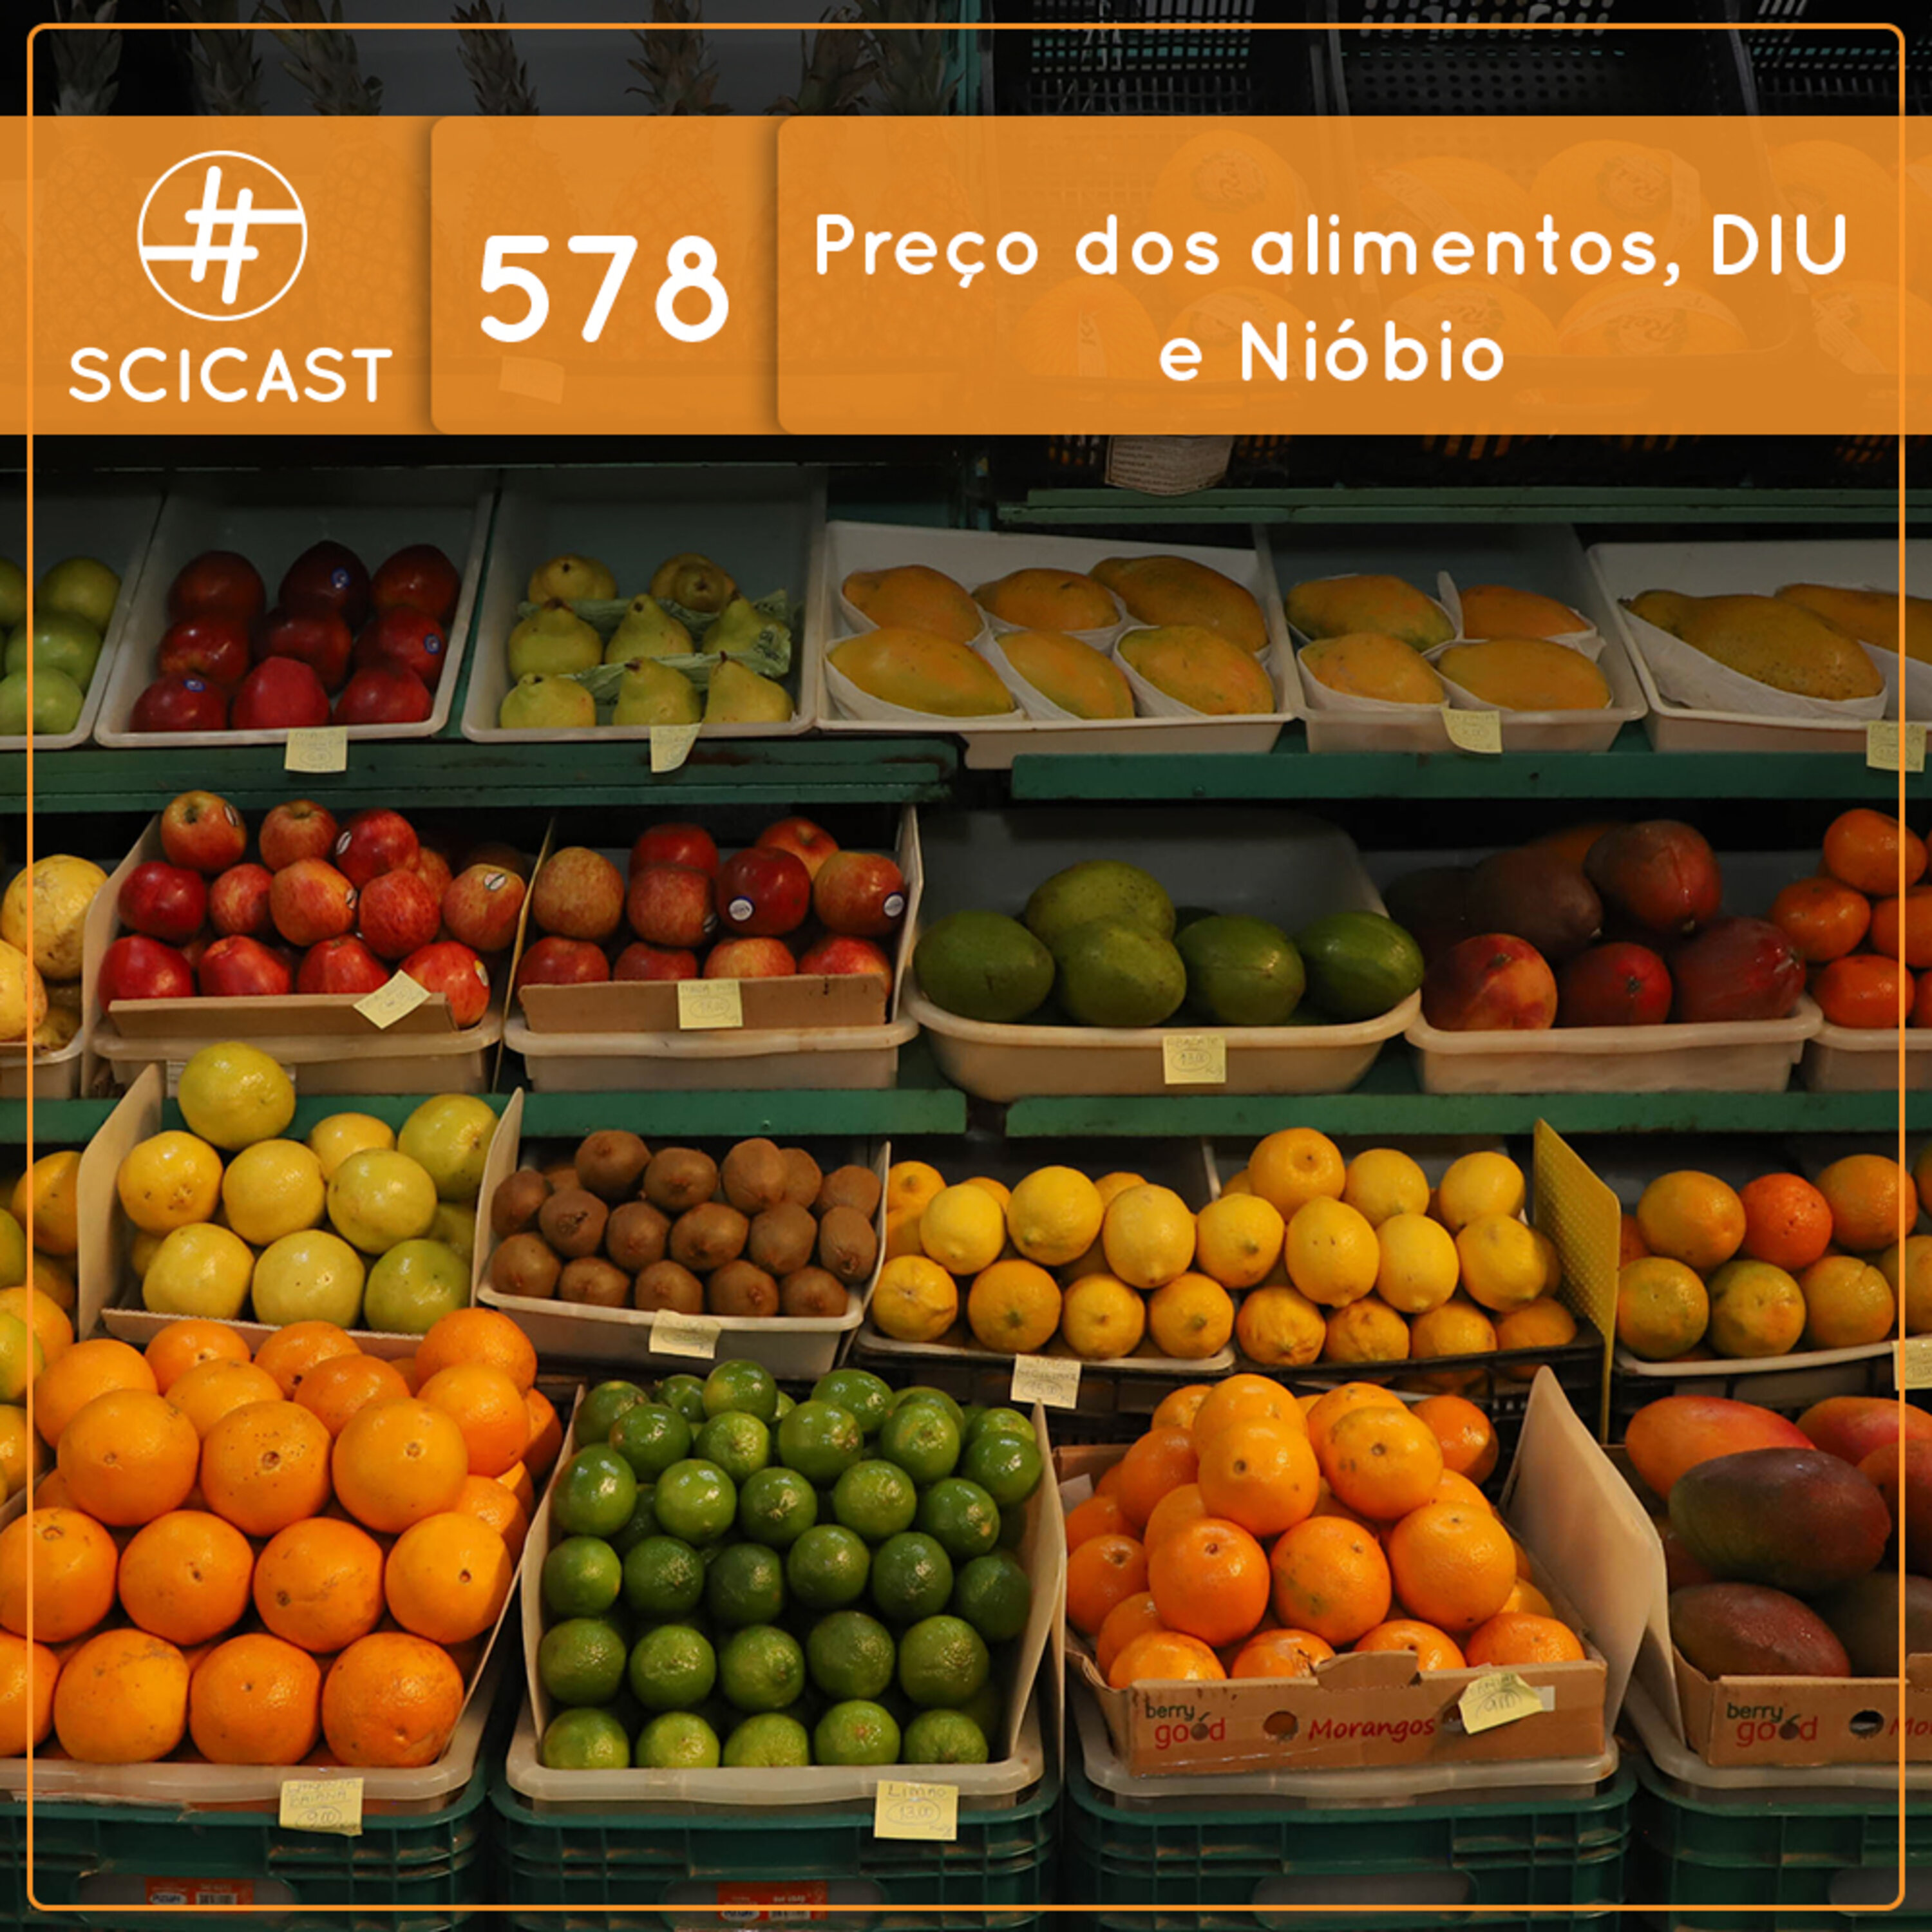 Preço dos alimentos, DIU e Nióbio (SciCast #578)